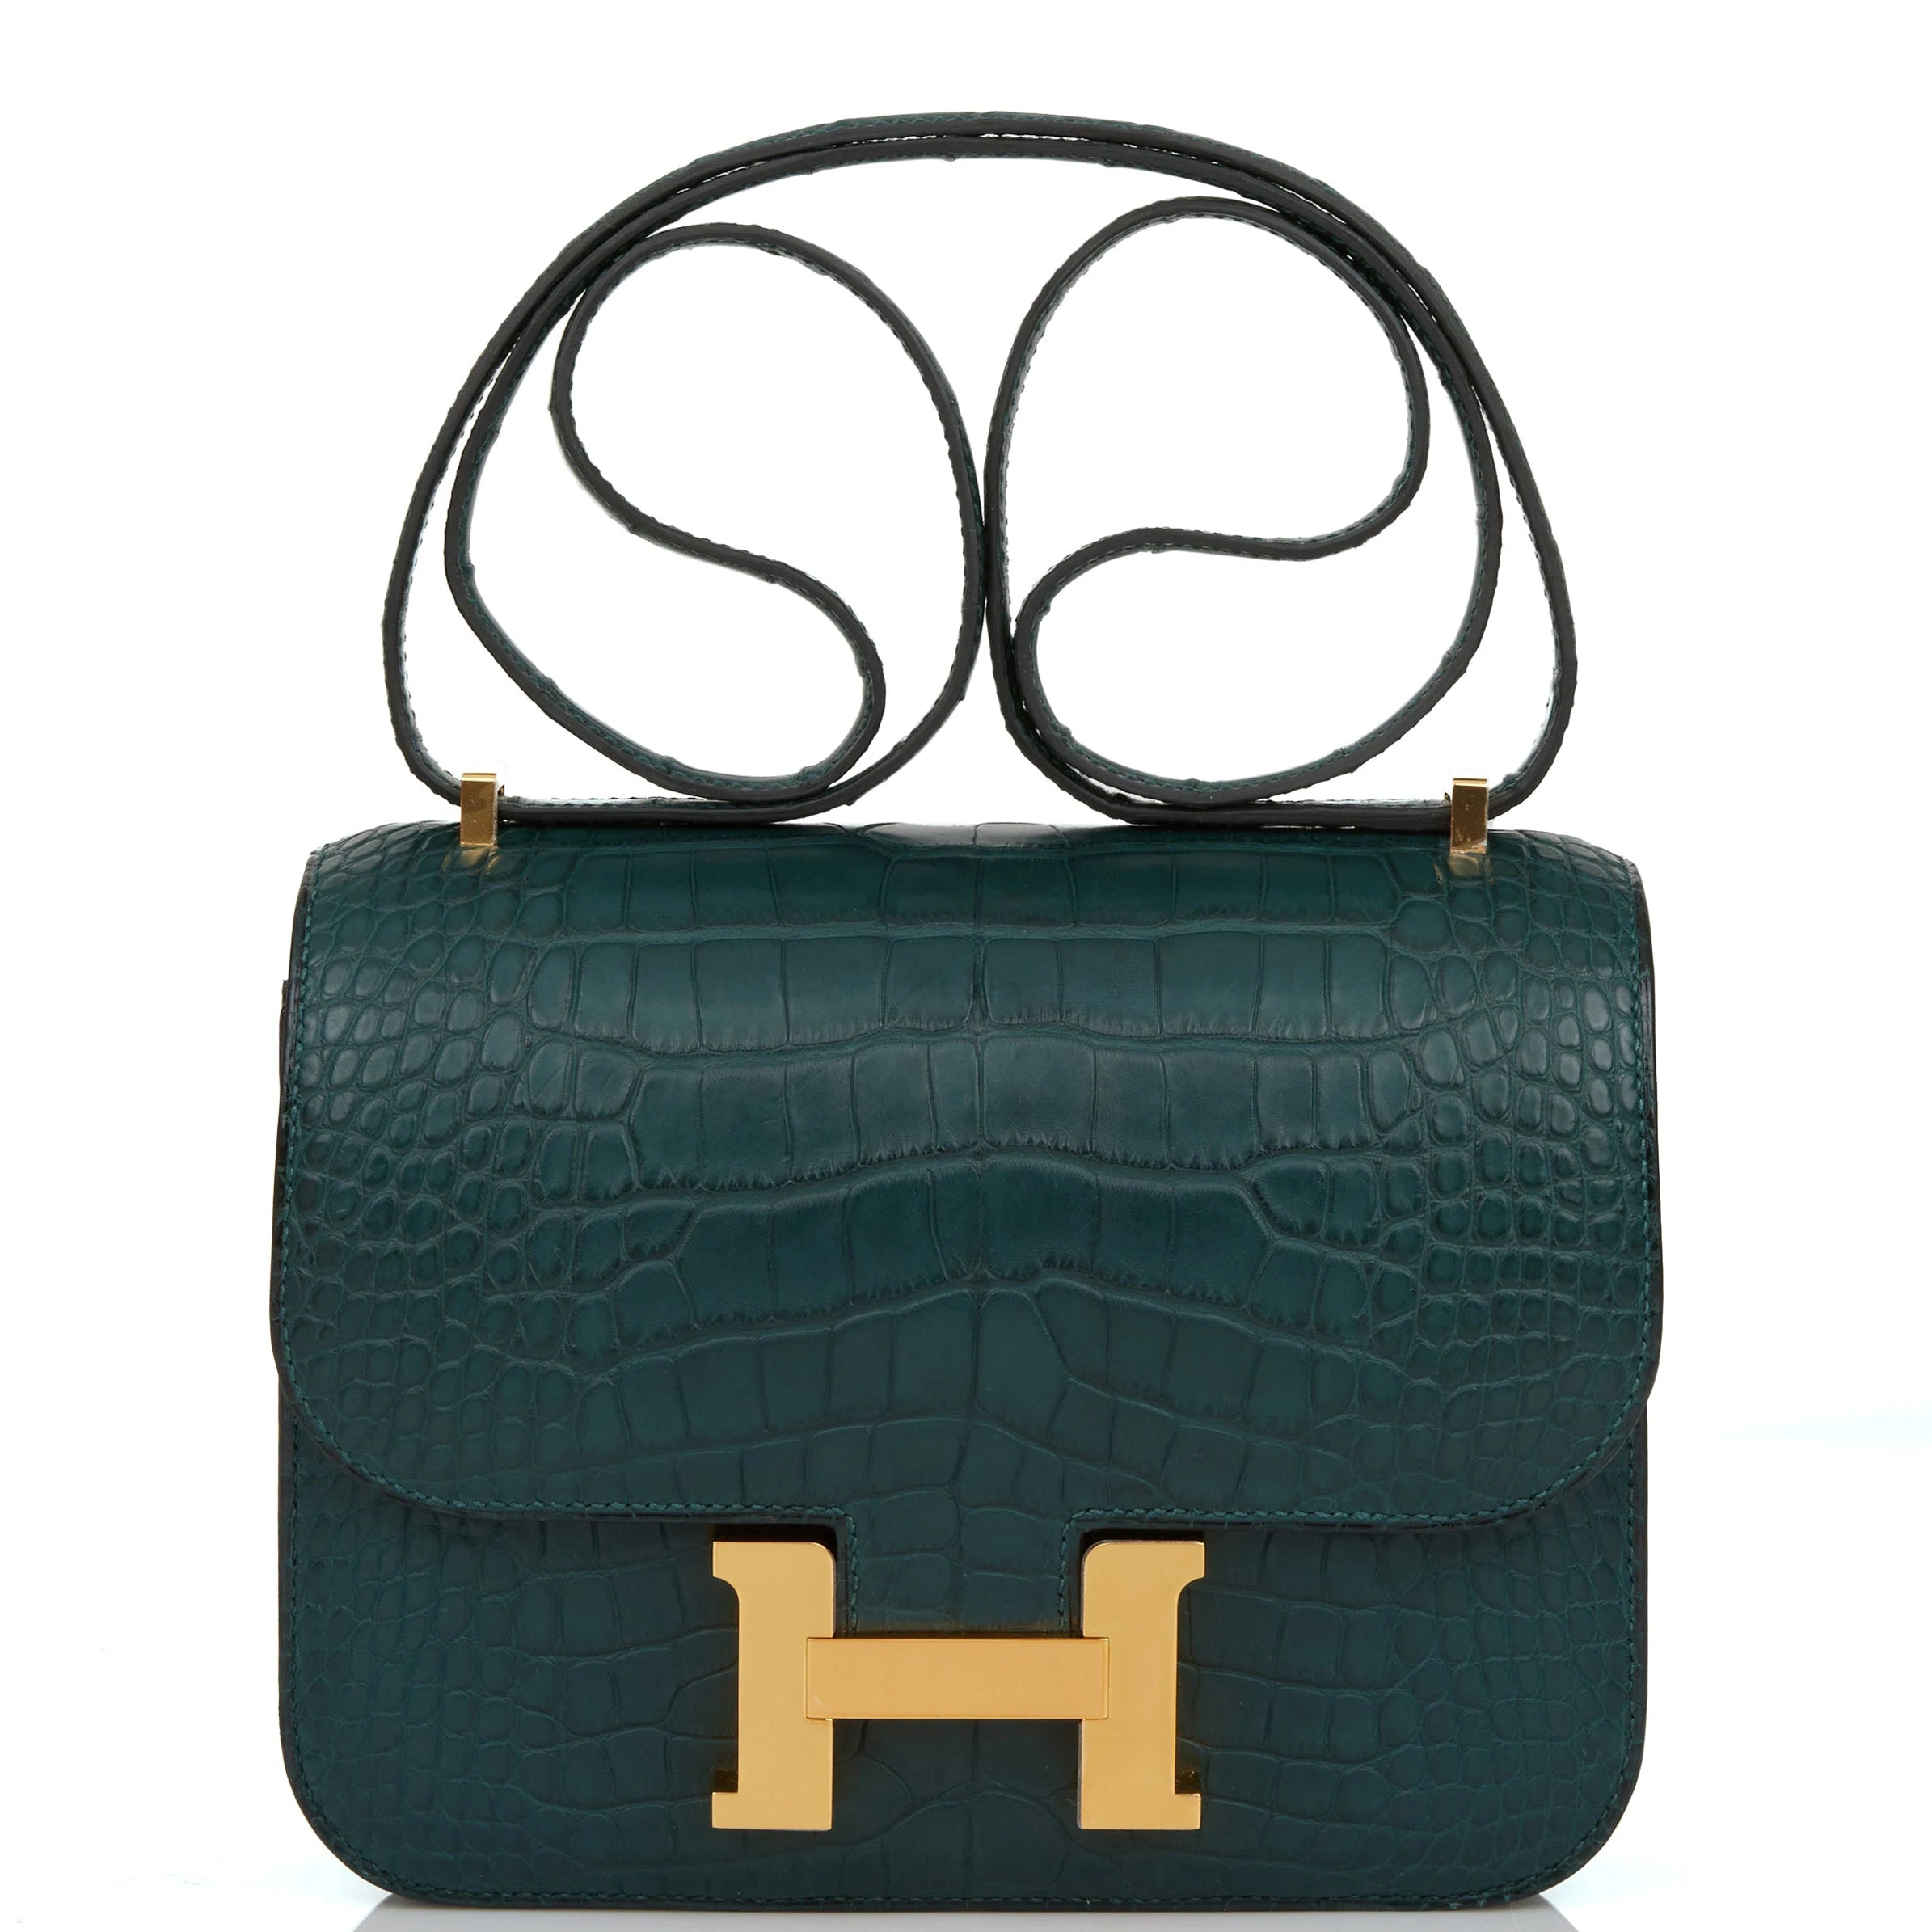 Hermès Original Bag